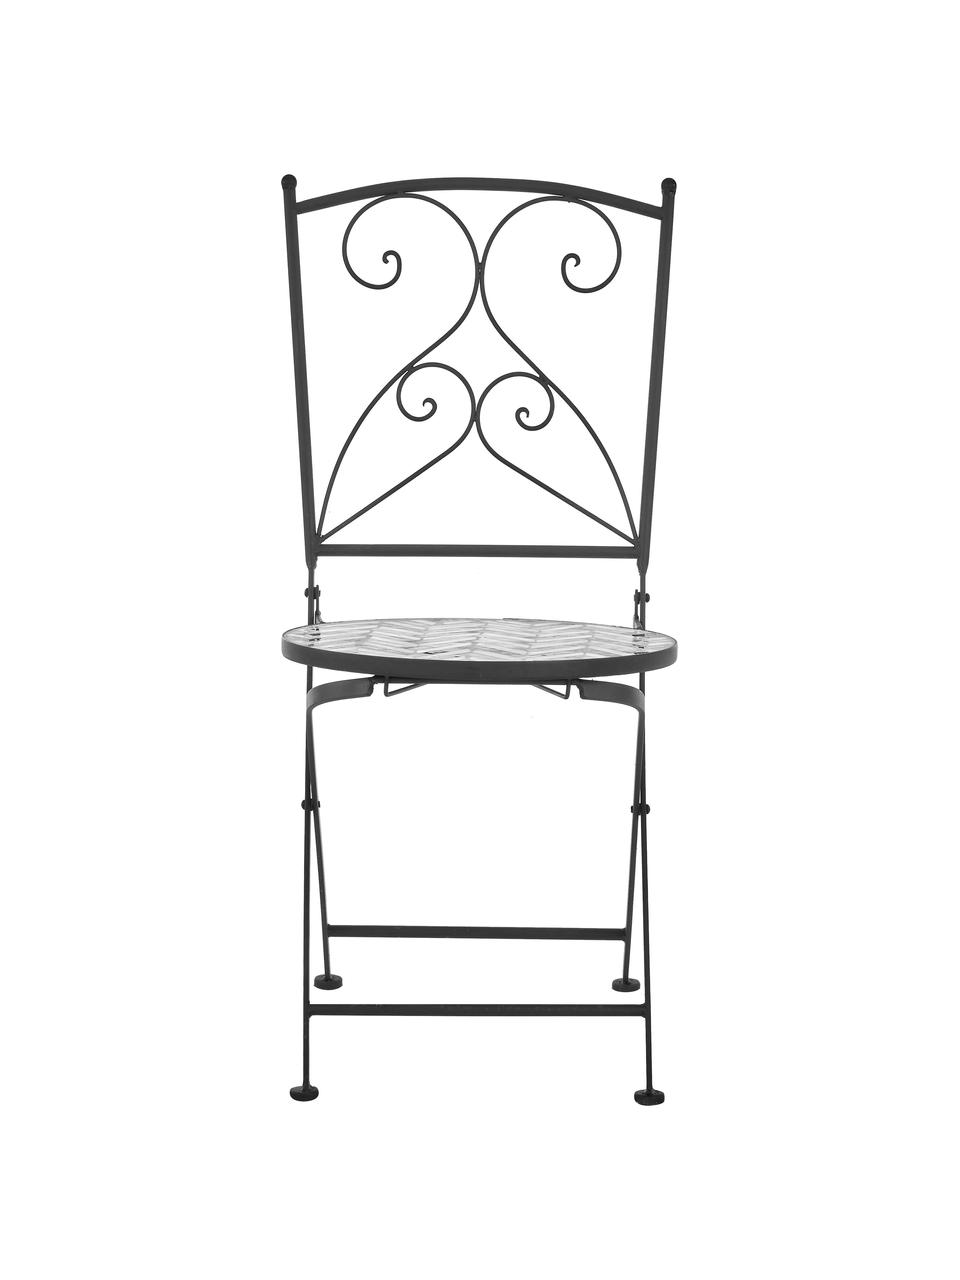 Balkonstühle Verano mit Mosaik, 2 Stück, Gestell: Metall, pulverbeschichtet, Sitzfläche: Steinmosaik, Grau, Weiß, Schwarz, B 40 x T 52 cm